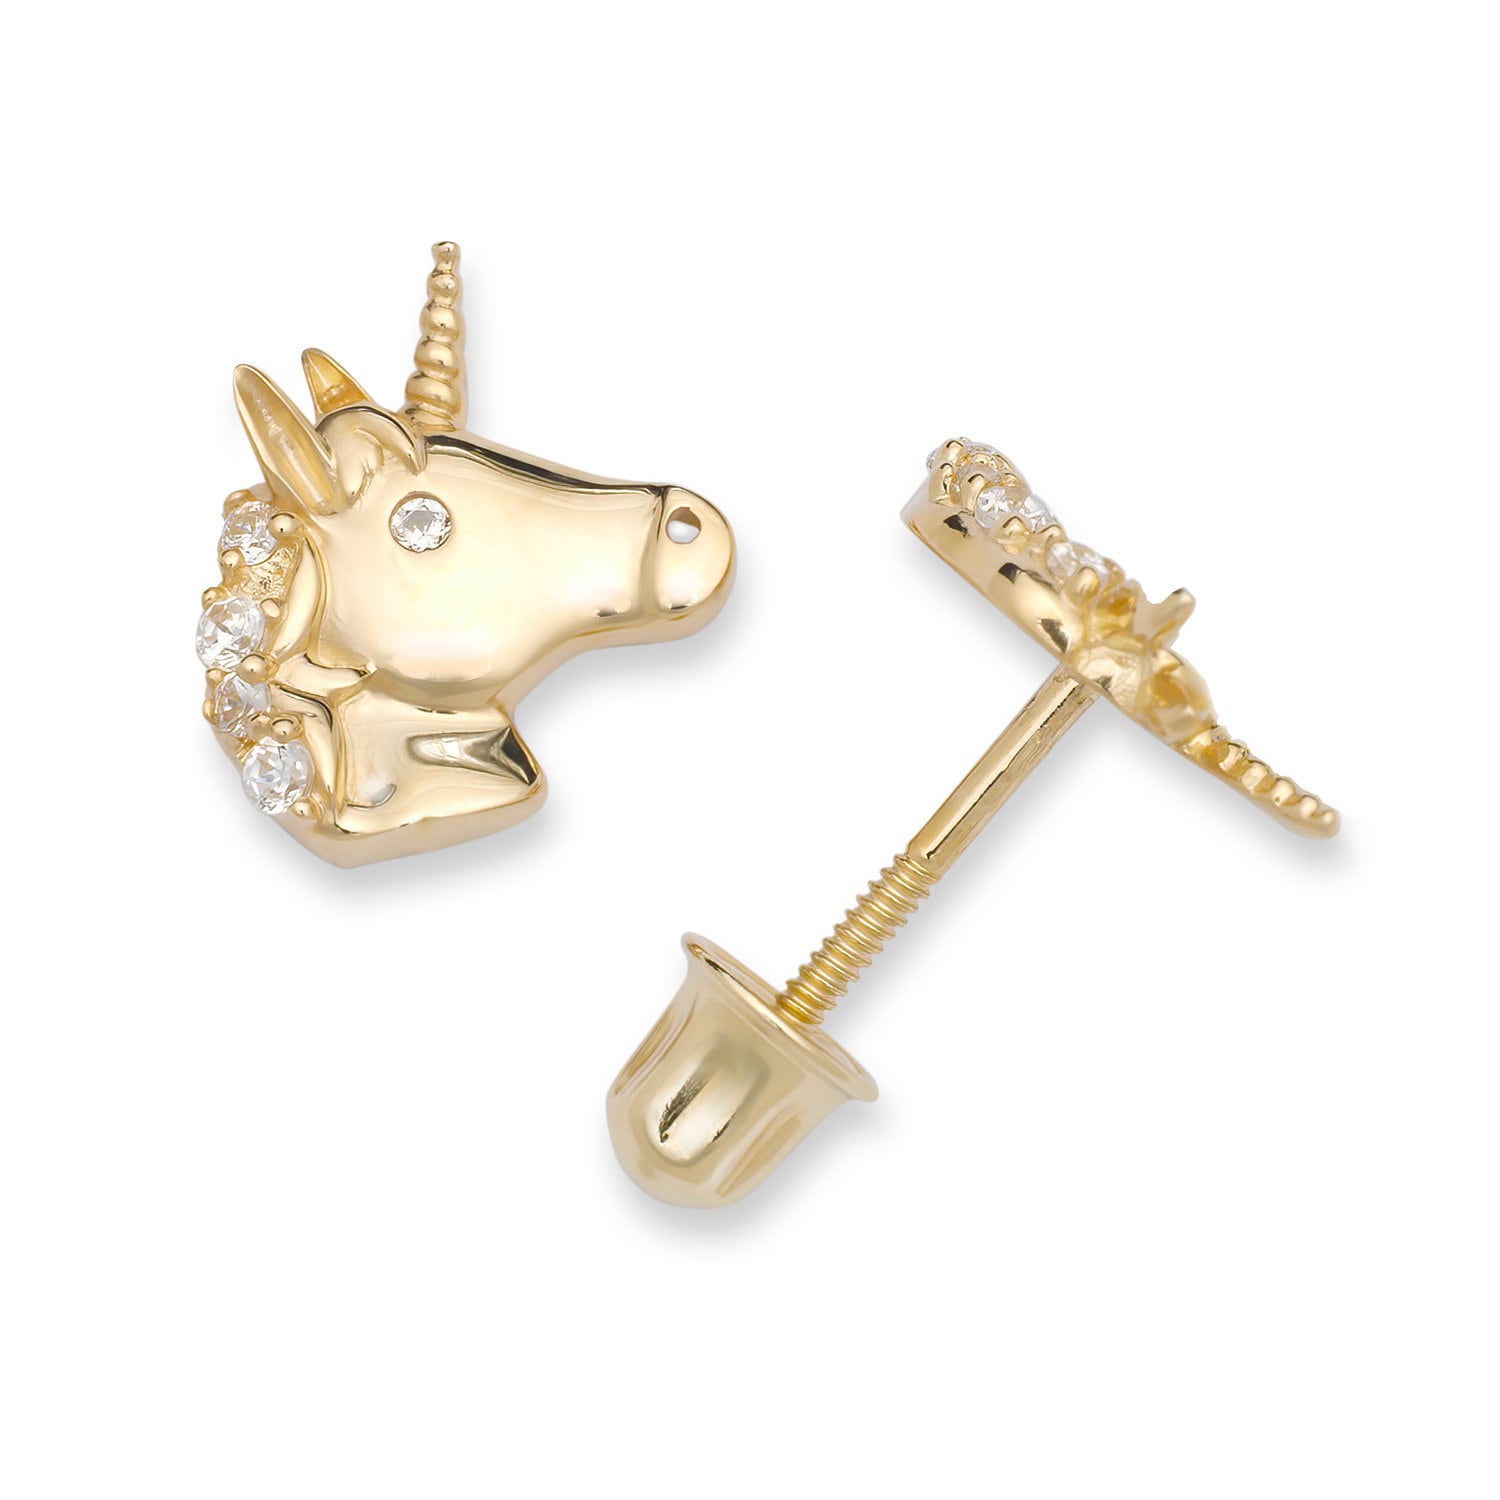 Girls' Rainbow Mane Unicorn Screw Back 14K Gold Earrings - in Season Jewelry